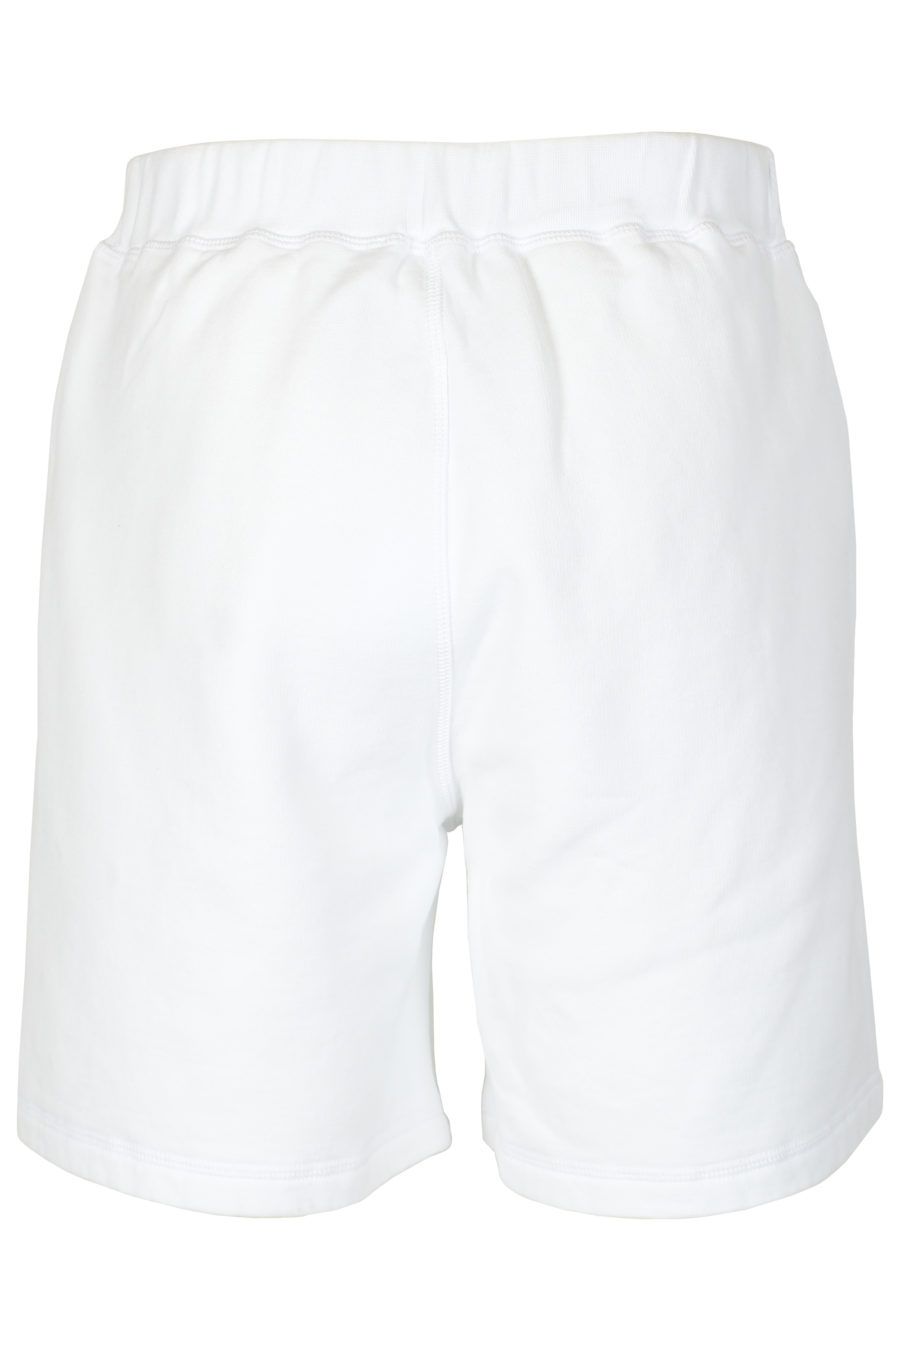 Shorts blancos logo "Icon" vertical - IMG 2610